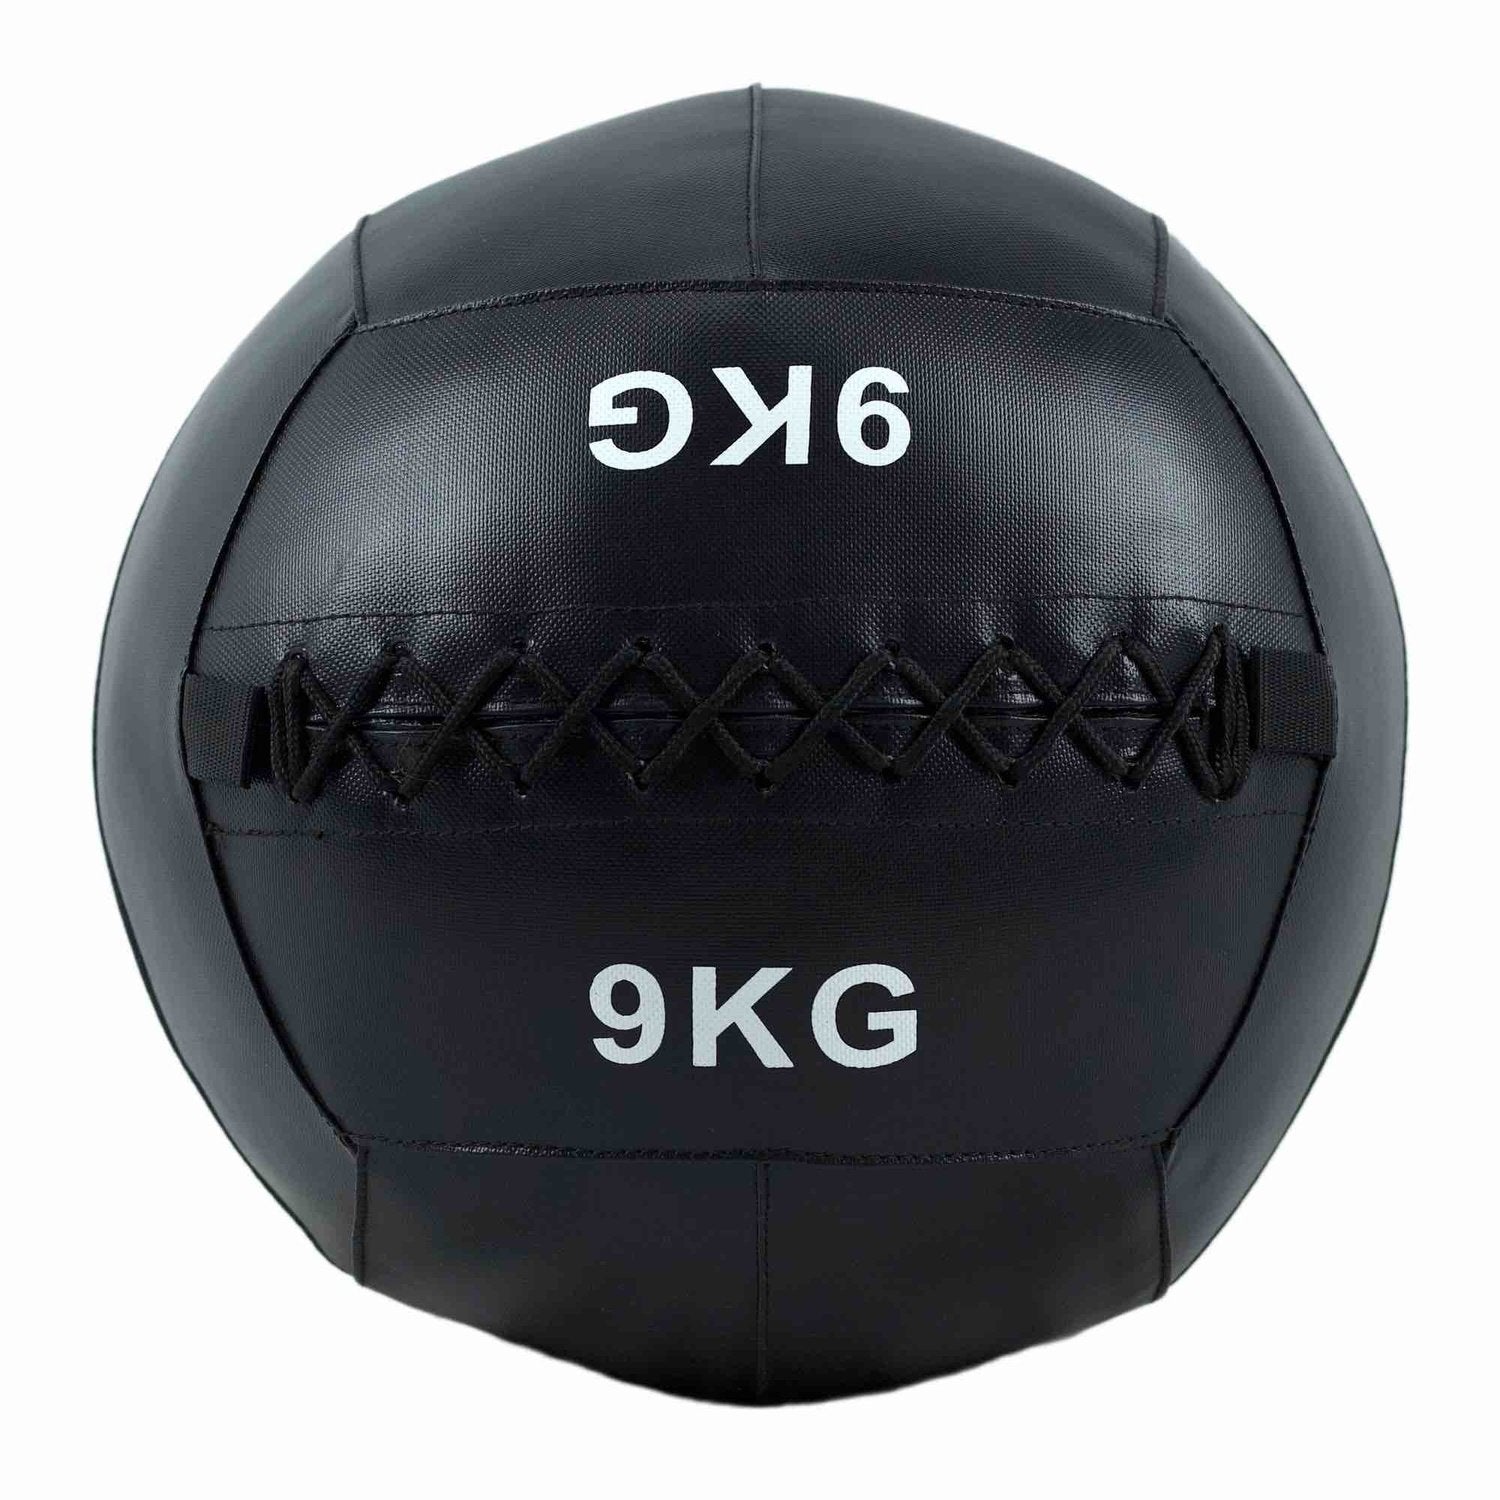 HighPowered Wallball (Medizinball) kaufen bei HighPowered.ch